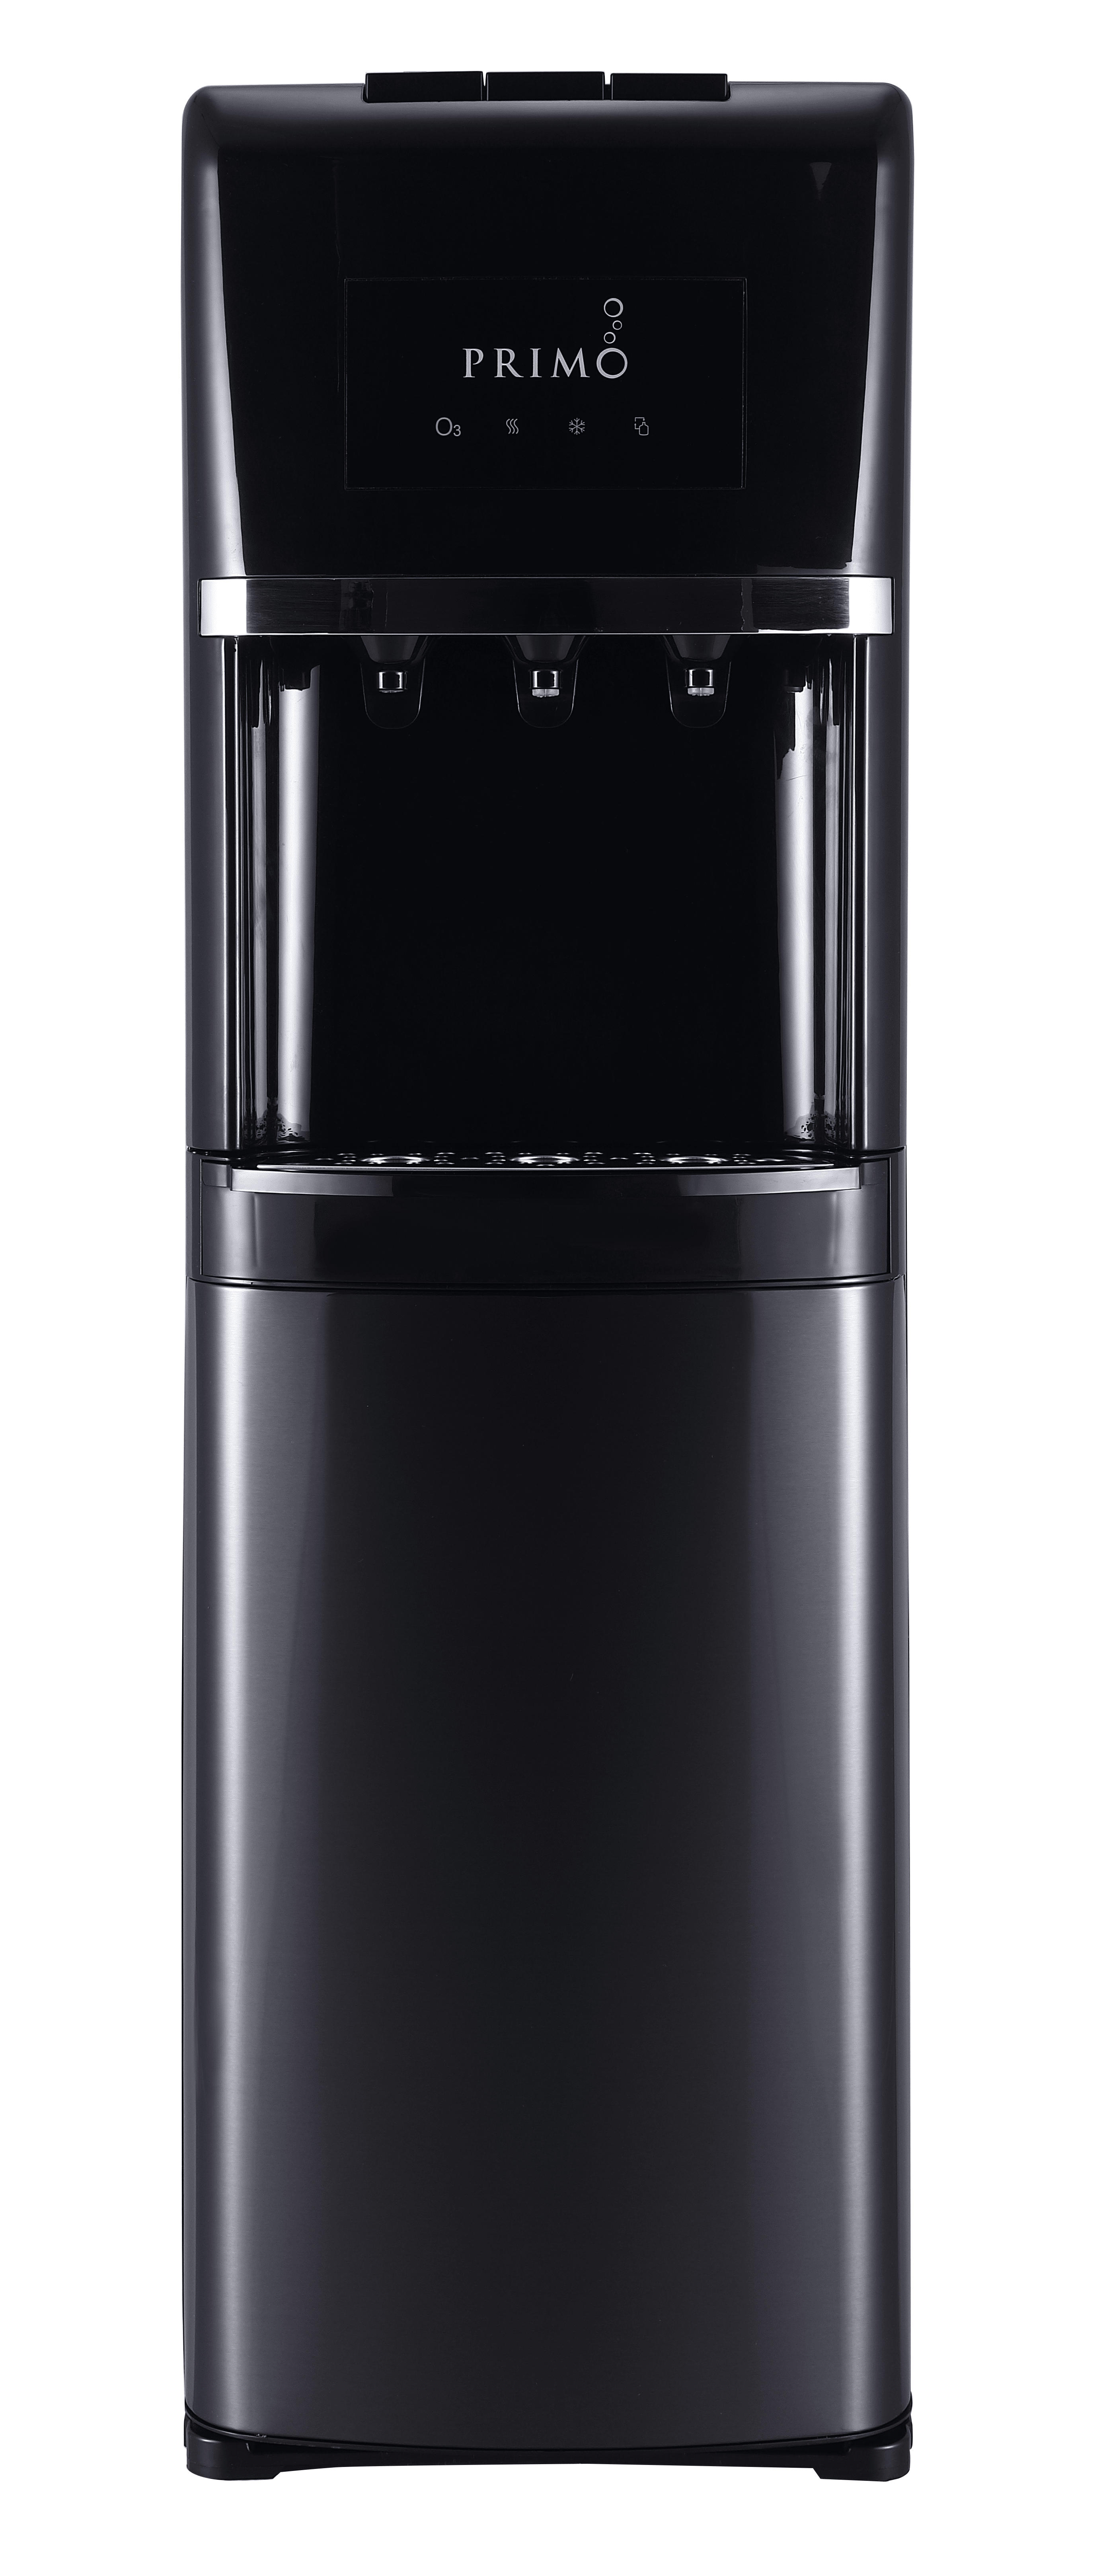 Primo Deluxe Bottom Loading Water Dispenser - Black : Target